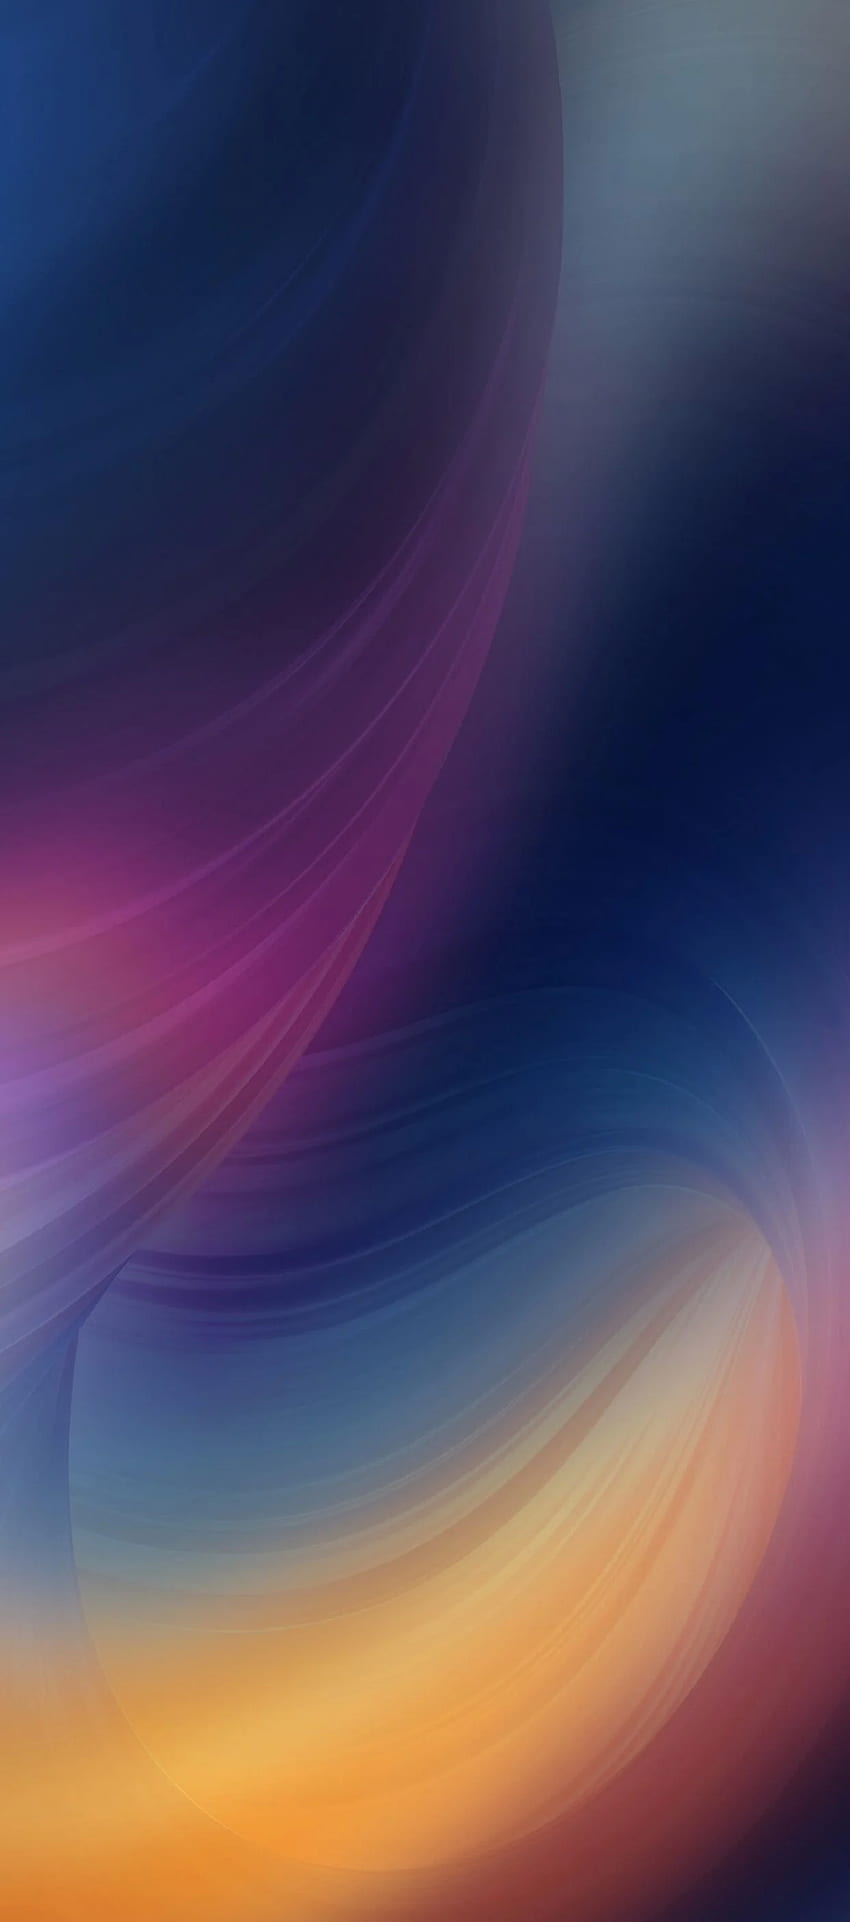 iOS 11, iPhone X, viola, blu, pulito, semplice, astratto, mela, , iphone 8, pulito, bellezza, colore. Xperia , iPhone 5s , Huawei , iPhone X Estratto Sfondo del telefono HD